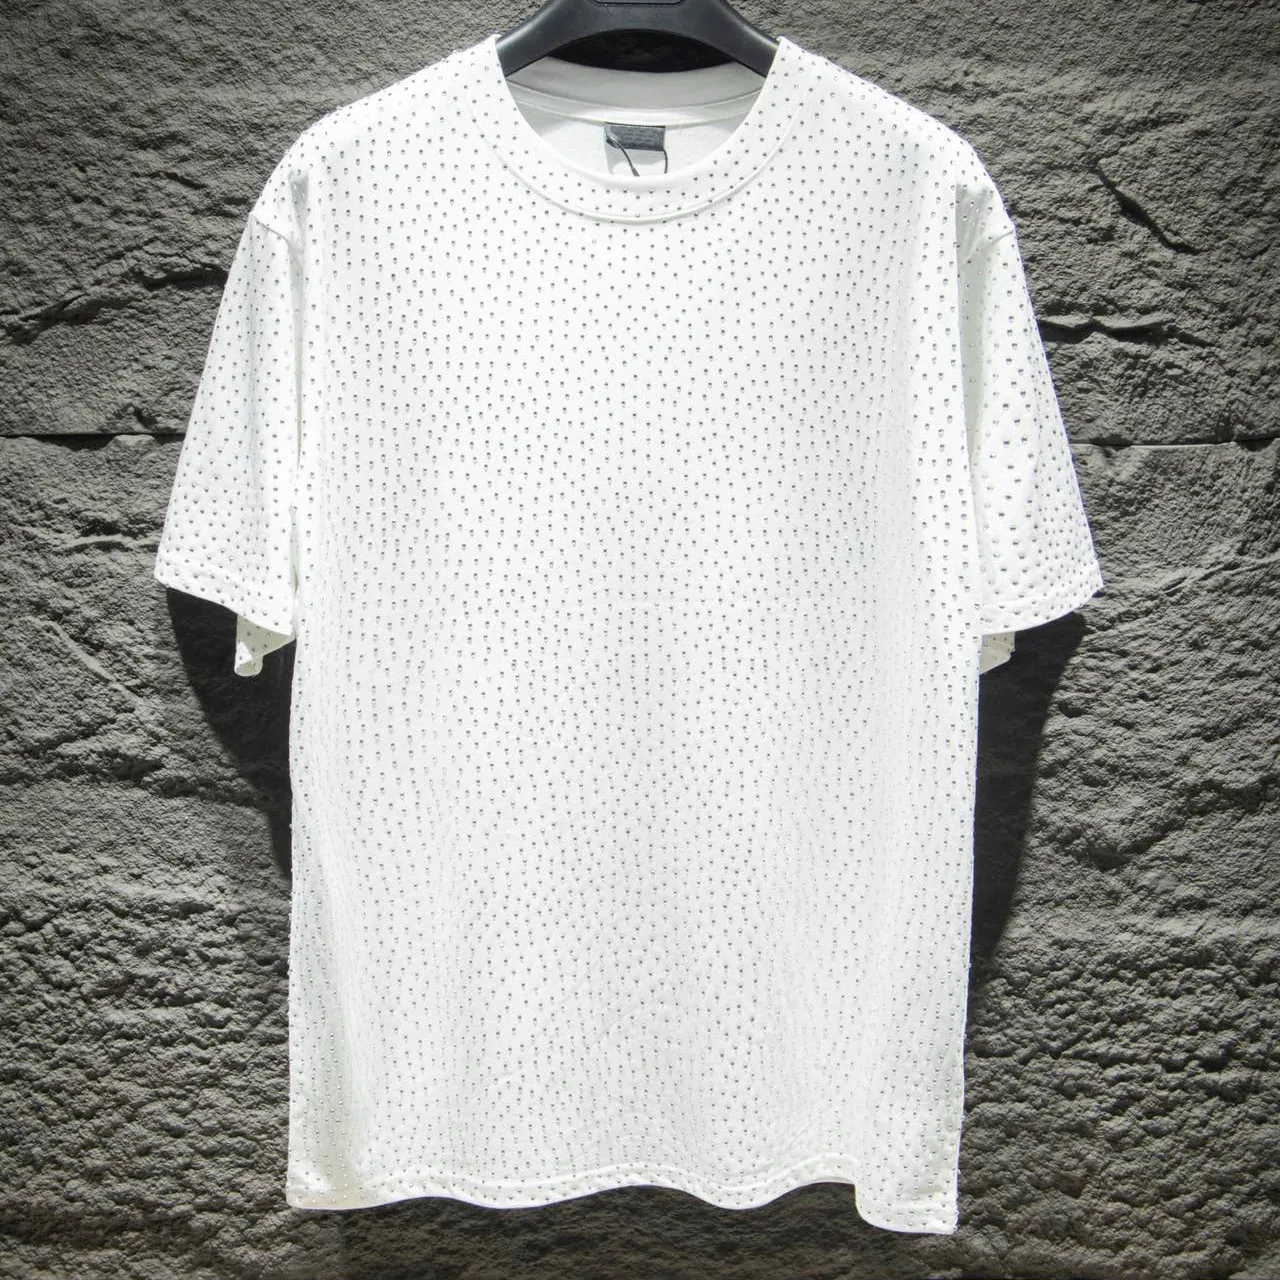 Camisetas masculinas Tees Polos Pescoço redondo impresso estilo polar desgaste de verão com rua puro algodão BA camiseta Essentialsweatshirts BALen28122293